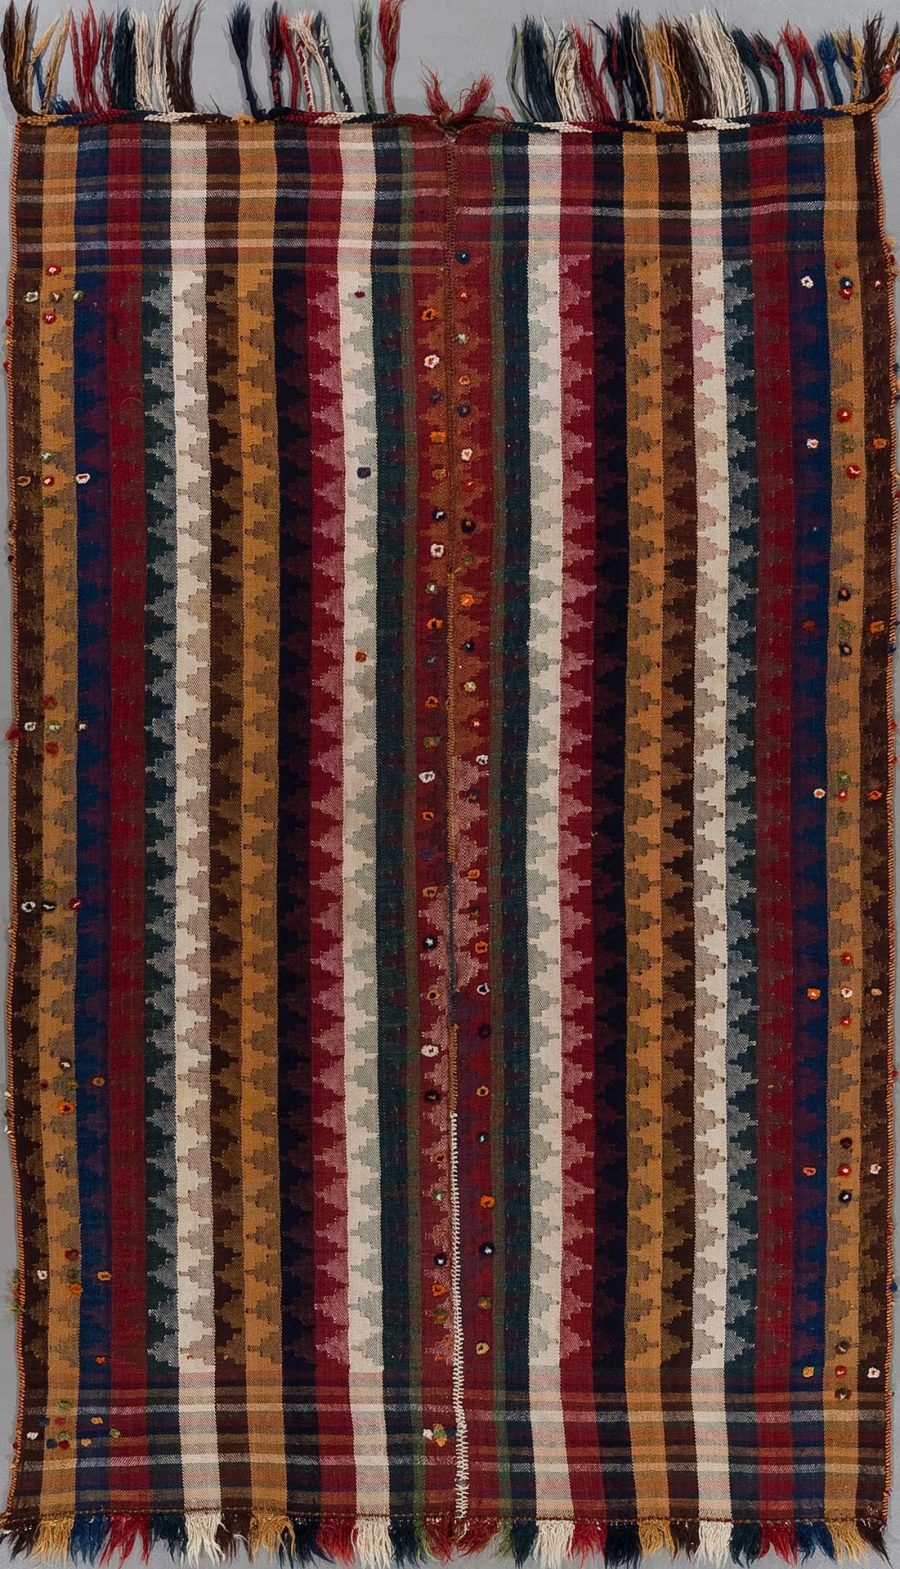 Handgewebter Teppich mit Längsstreifen in verschiedenen Farben und Mustern, verziert mit mehrfarbigen Fransen an einem Ende und eingenähten kleinen Verzierungen über die gesamte Fläche verteilt.